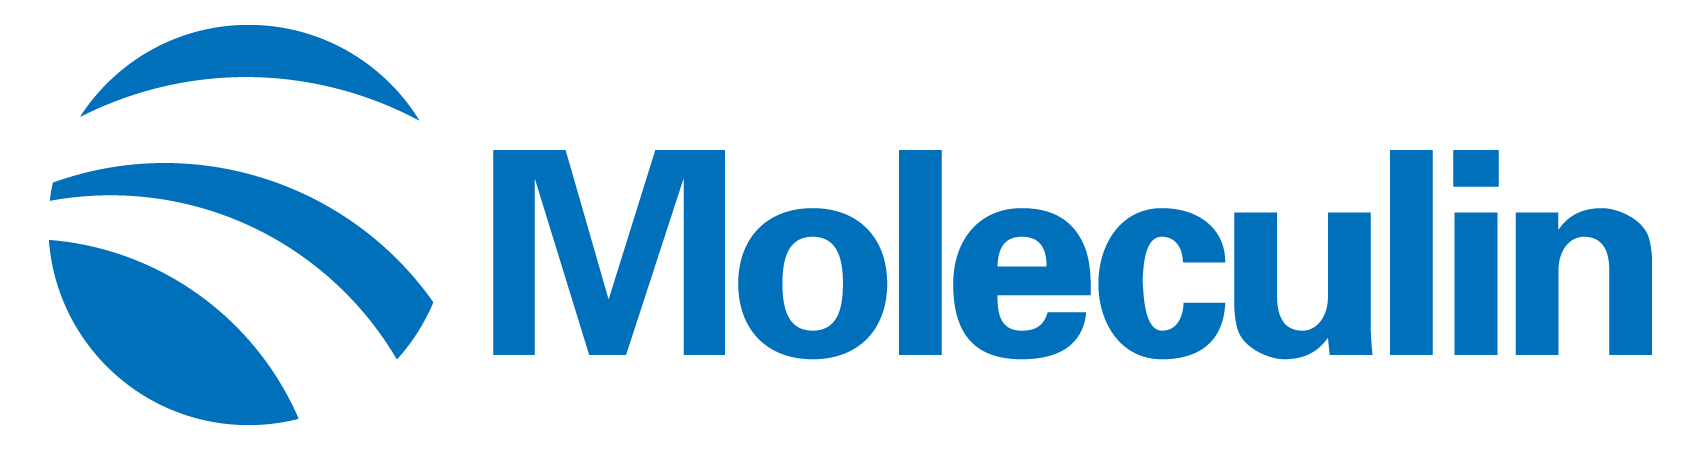 moleculin-logo_horiza33.jpg